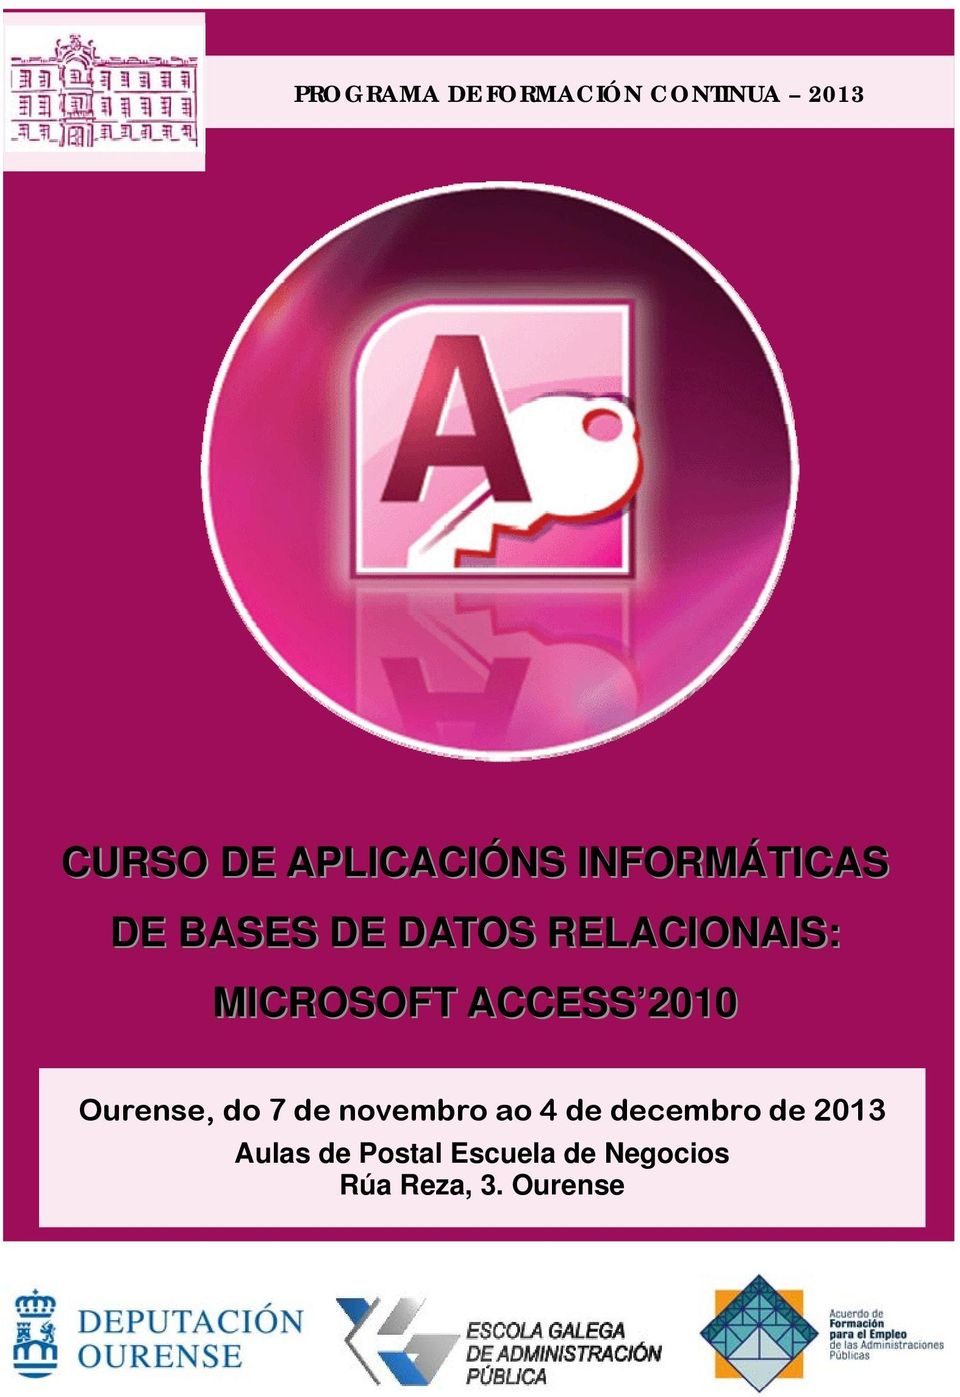 ACCESS 2010 Ourense, do 7 de novembro ao 4 de decembro de